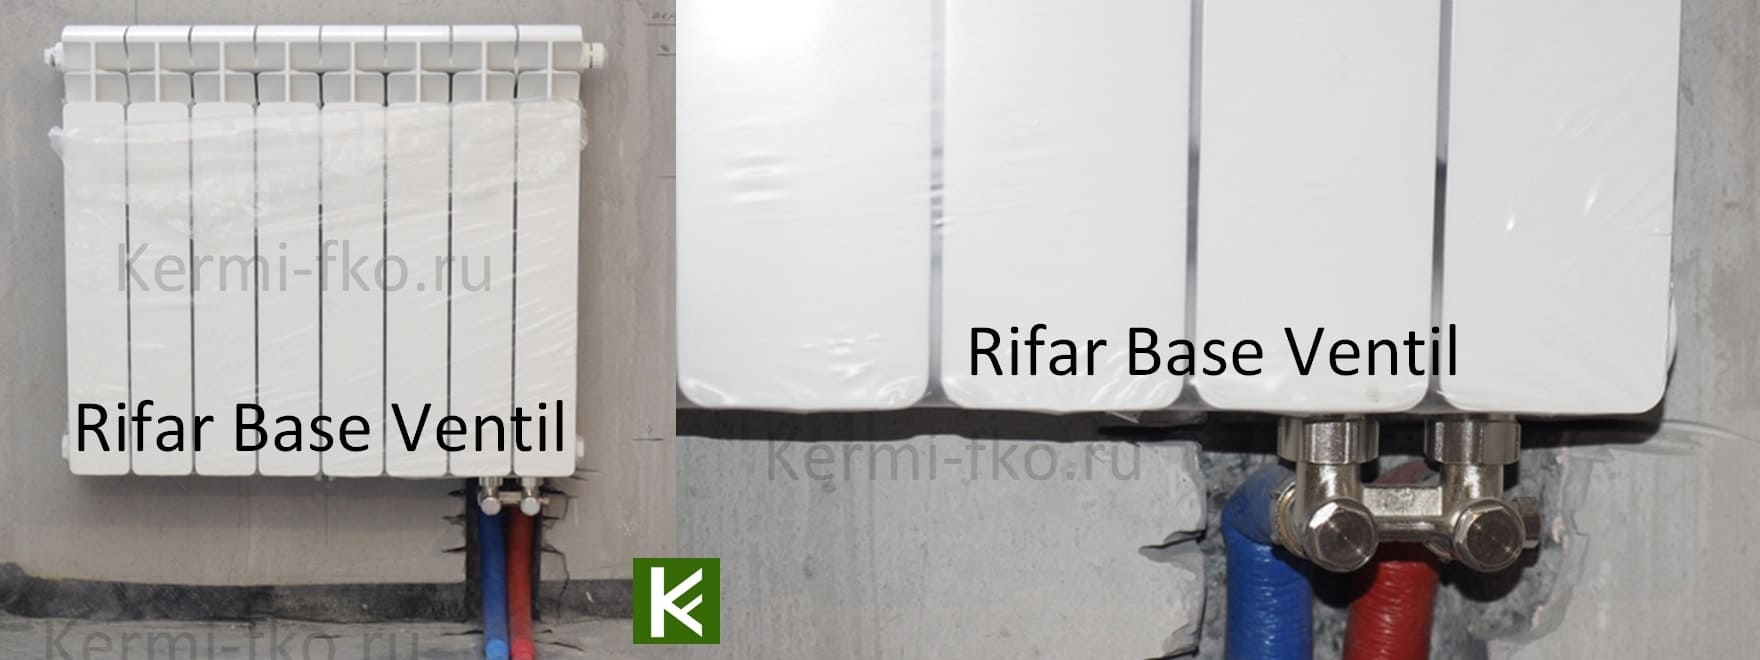 Rifar BASE Ventil биметаллические радиаторы Рифар бейс вентиль